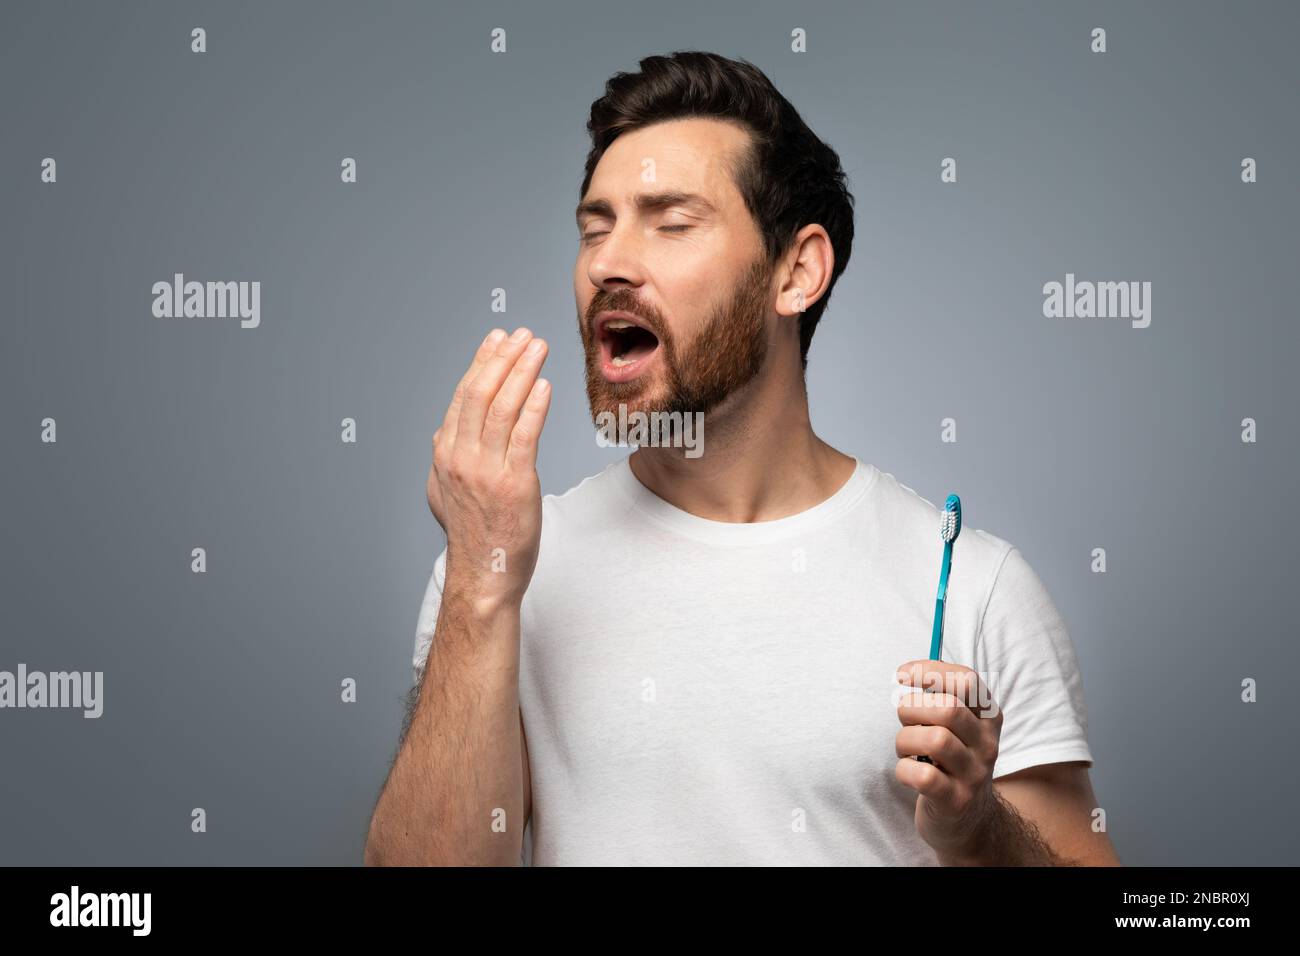 Ein Mann mittleren Alters, der die Hand nahe am Mund hält und die Atemfristigkeit prüft, besorgt über schlechte Mundhygiene Stockfoto